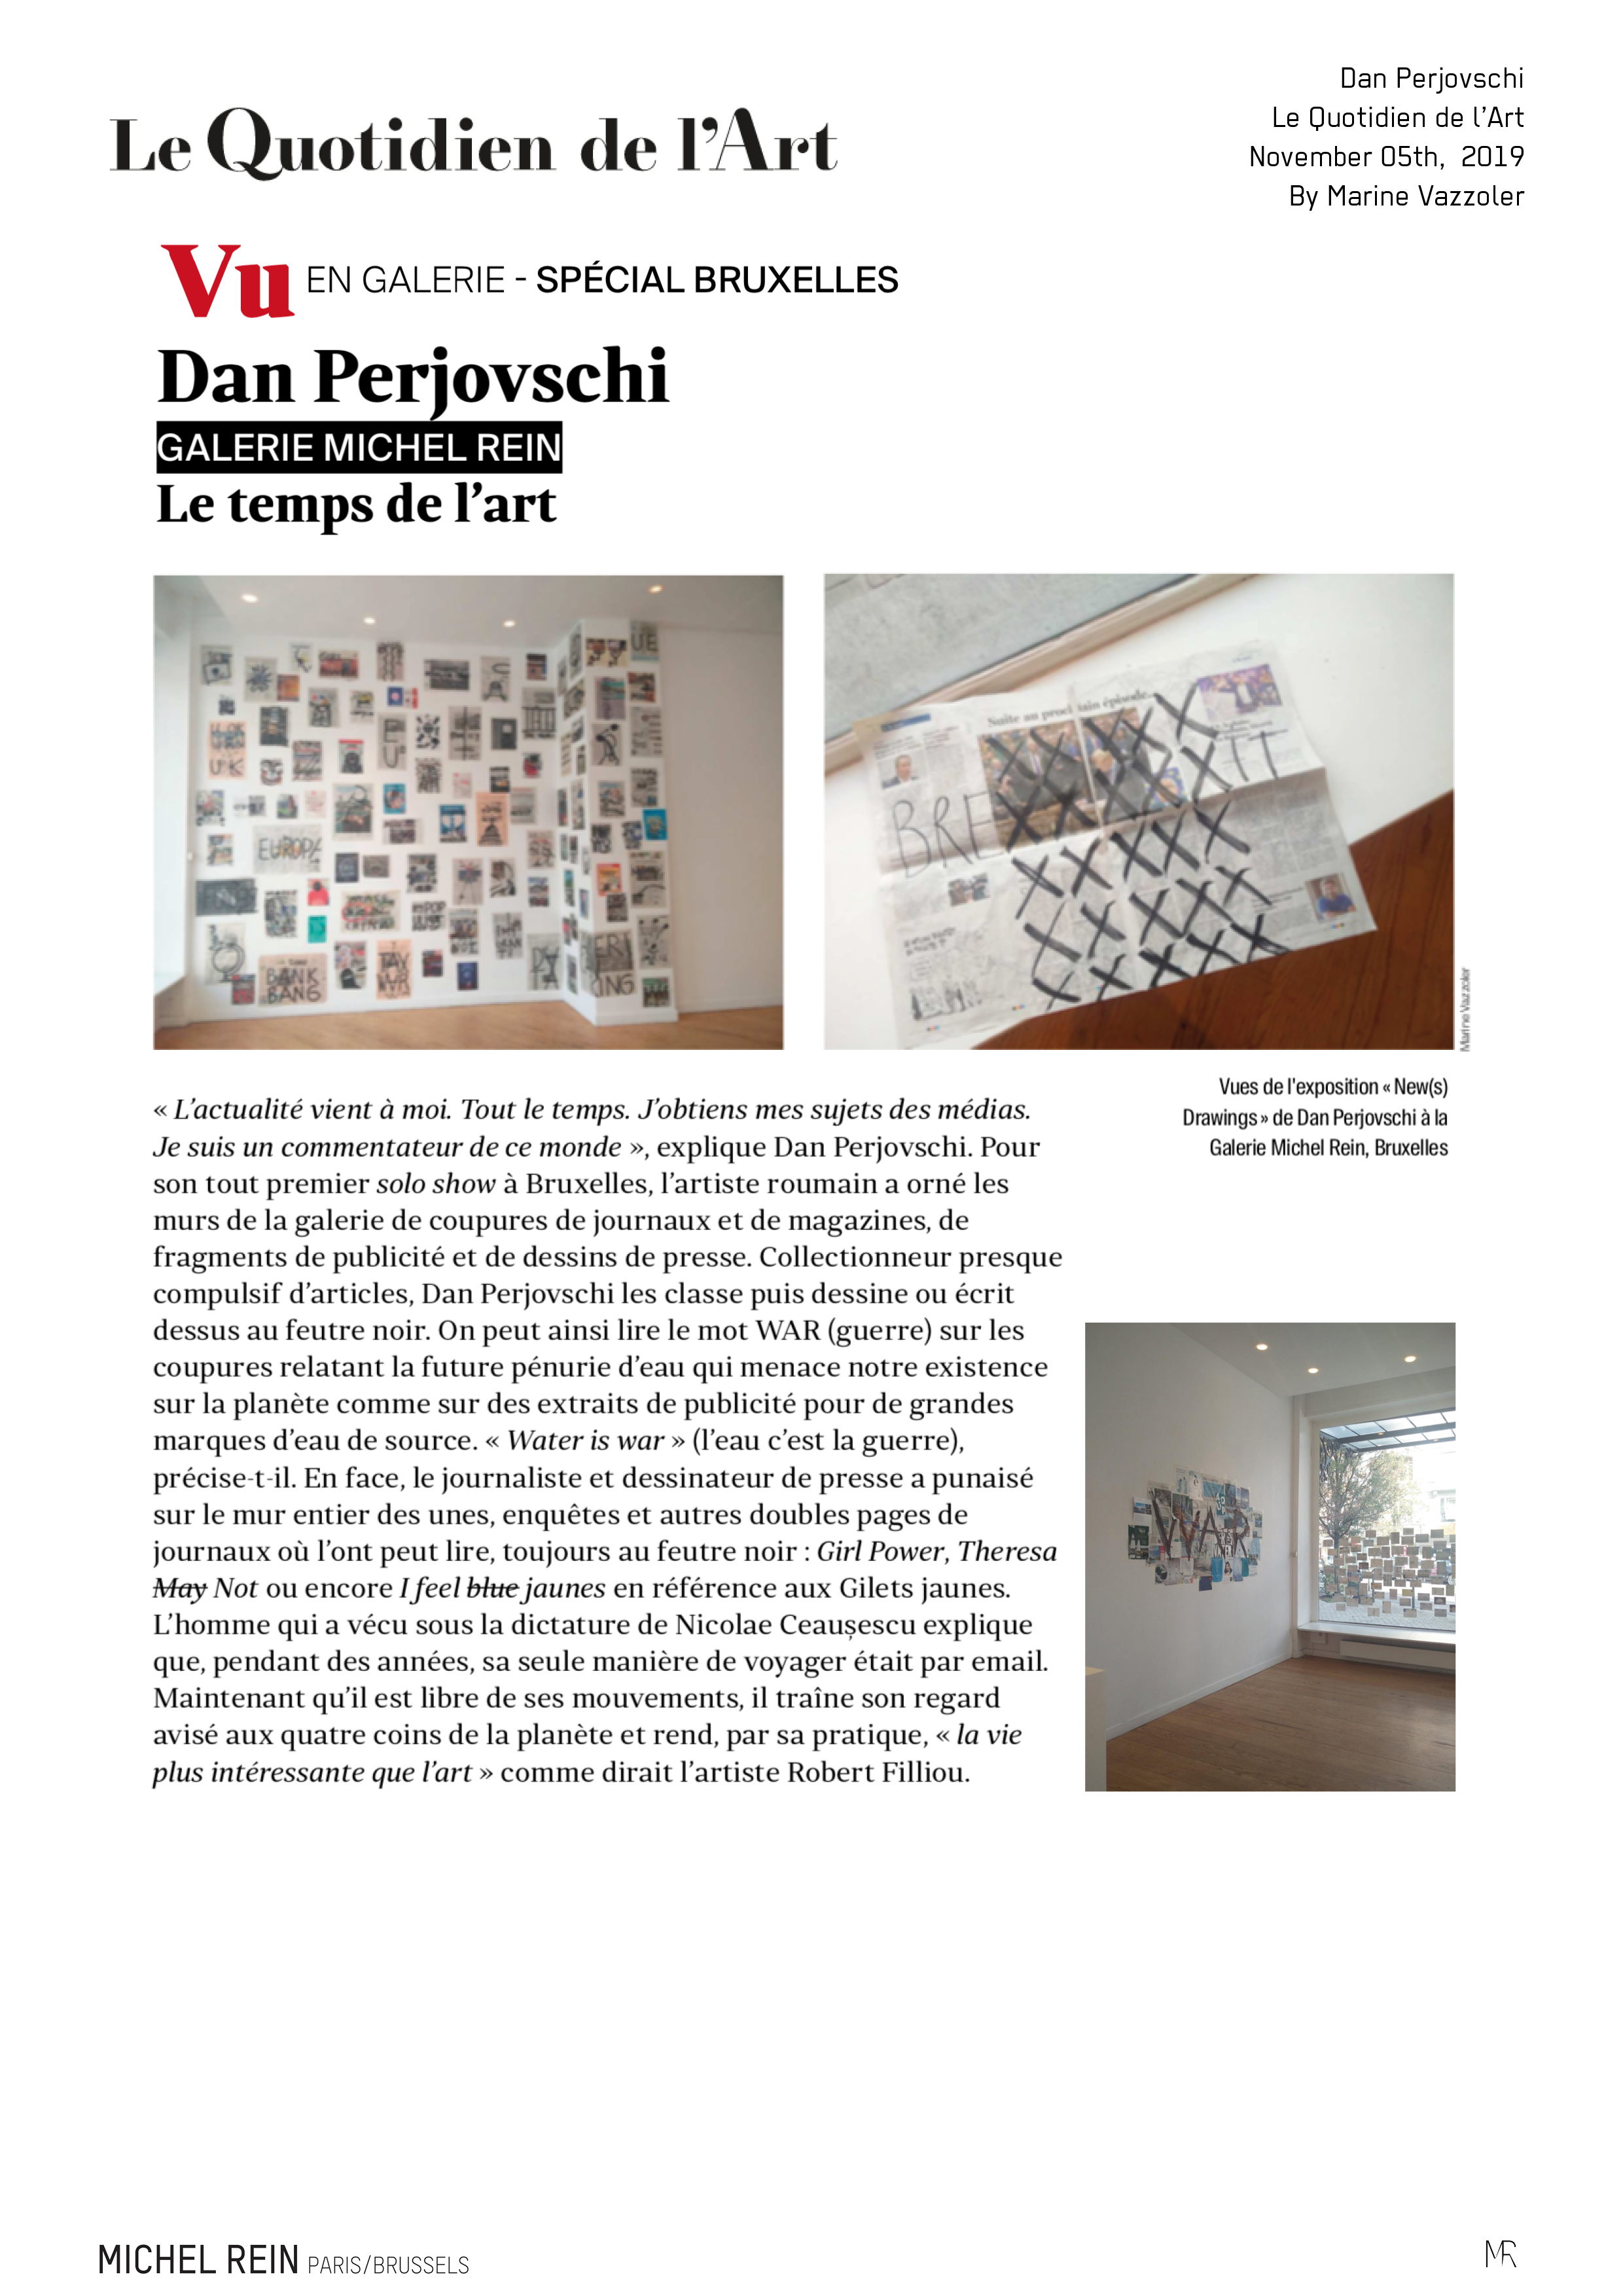 Dan Perjovschi - Le Quotidien de l'Art